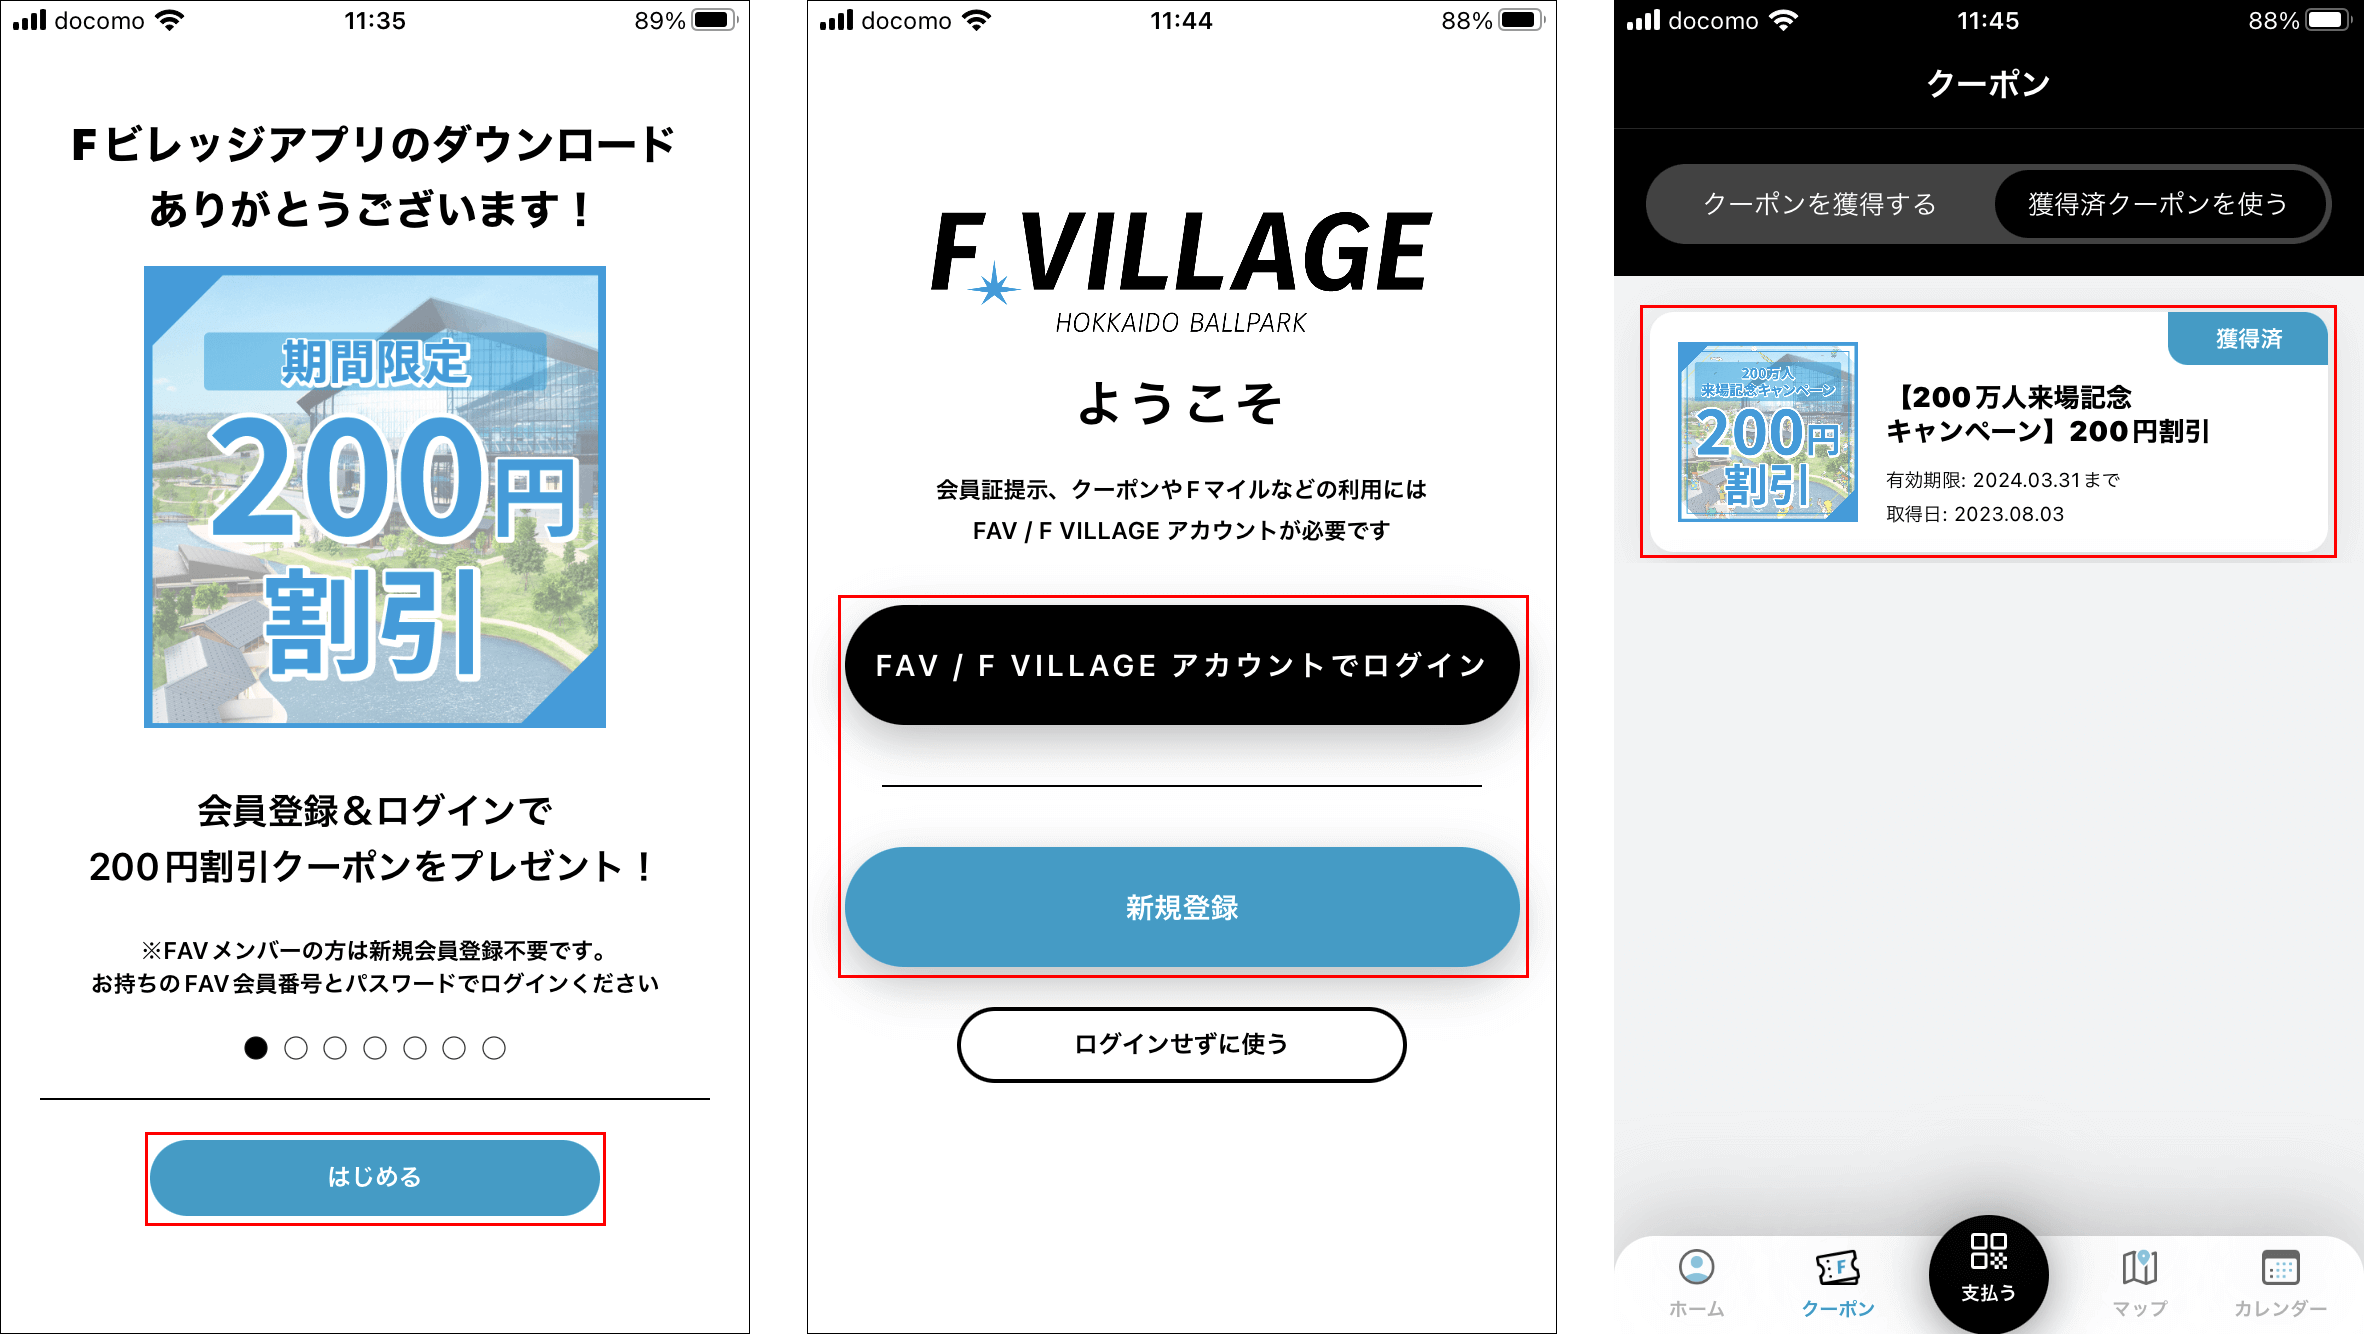 北海道ボールパークFビレッジ-200万人来場記念アプリキャンペーン(取得方法)